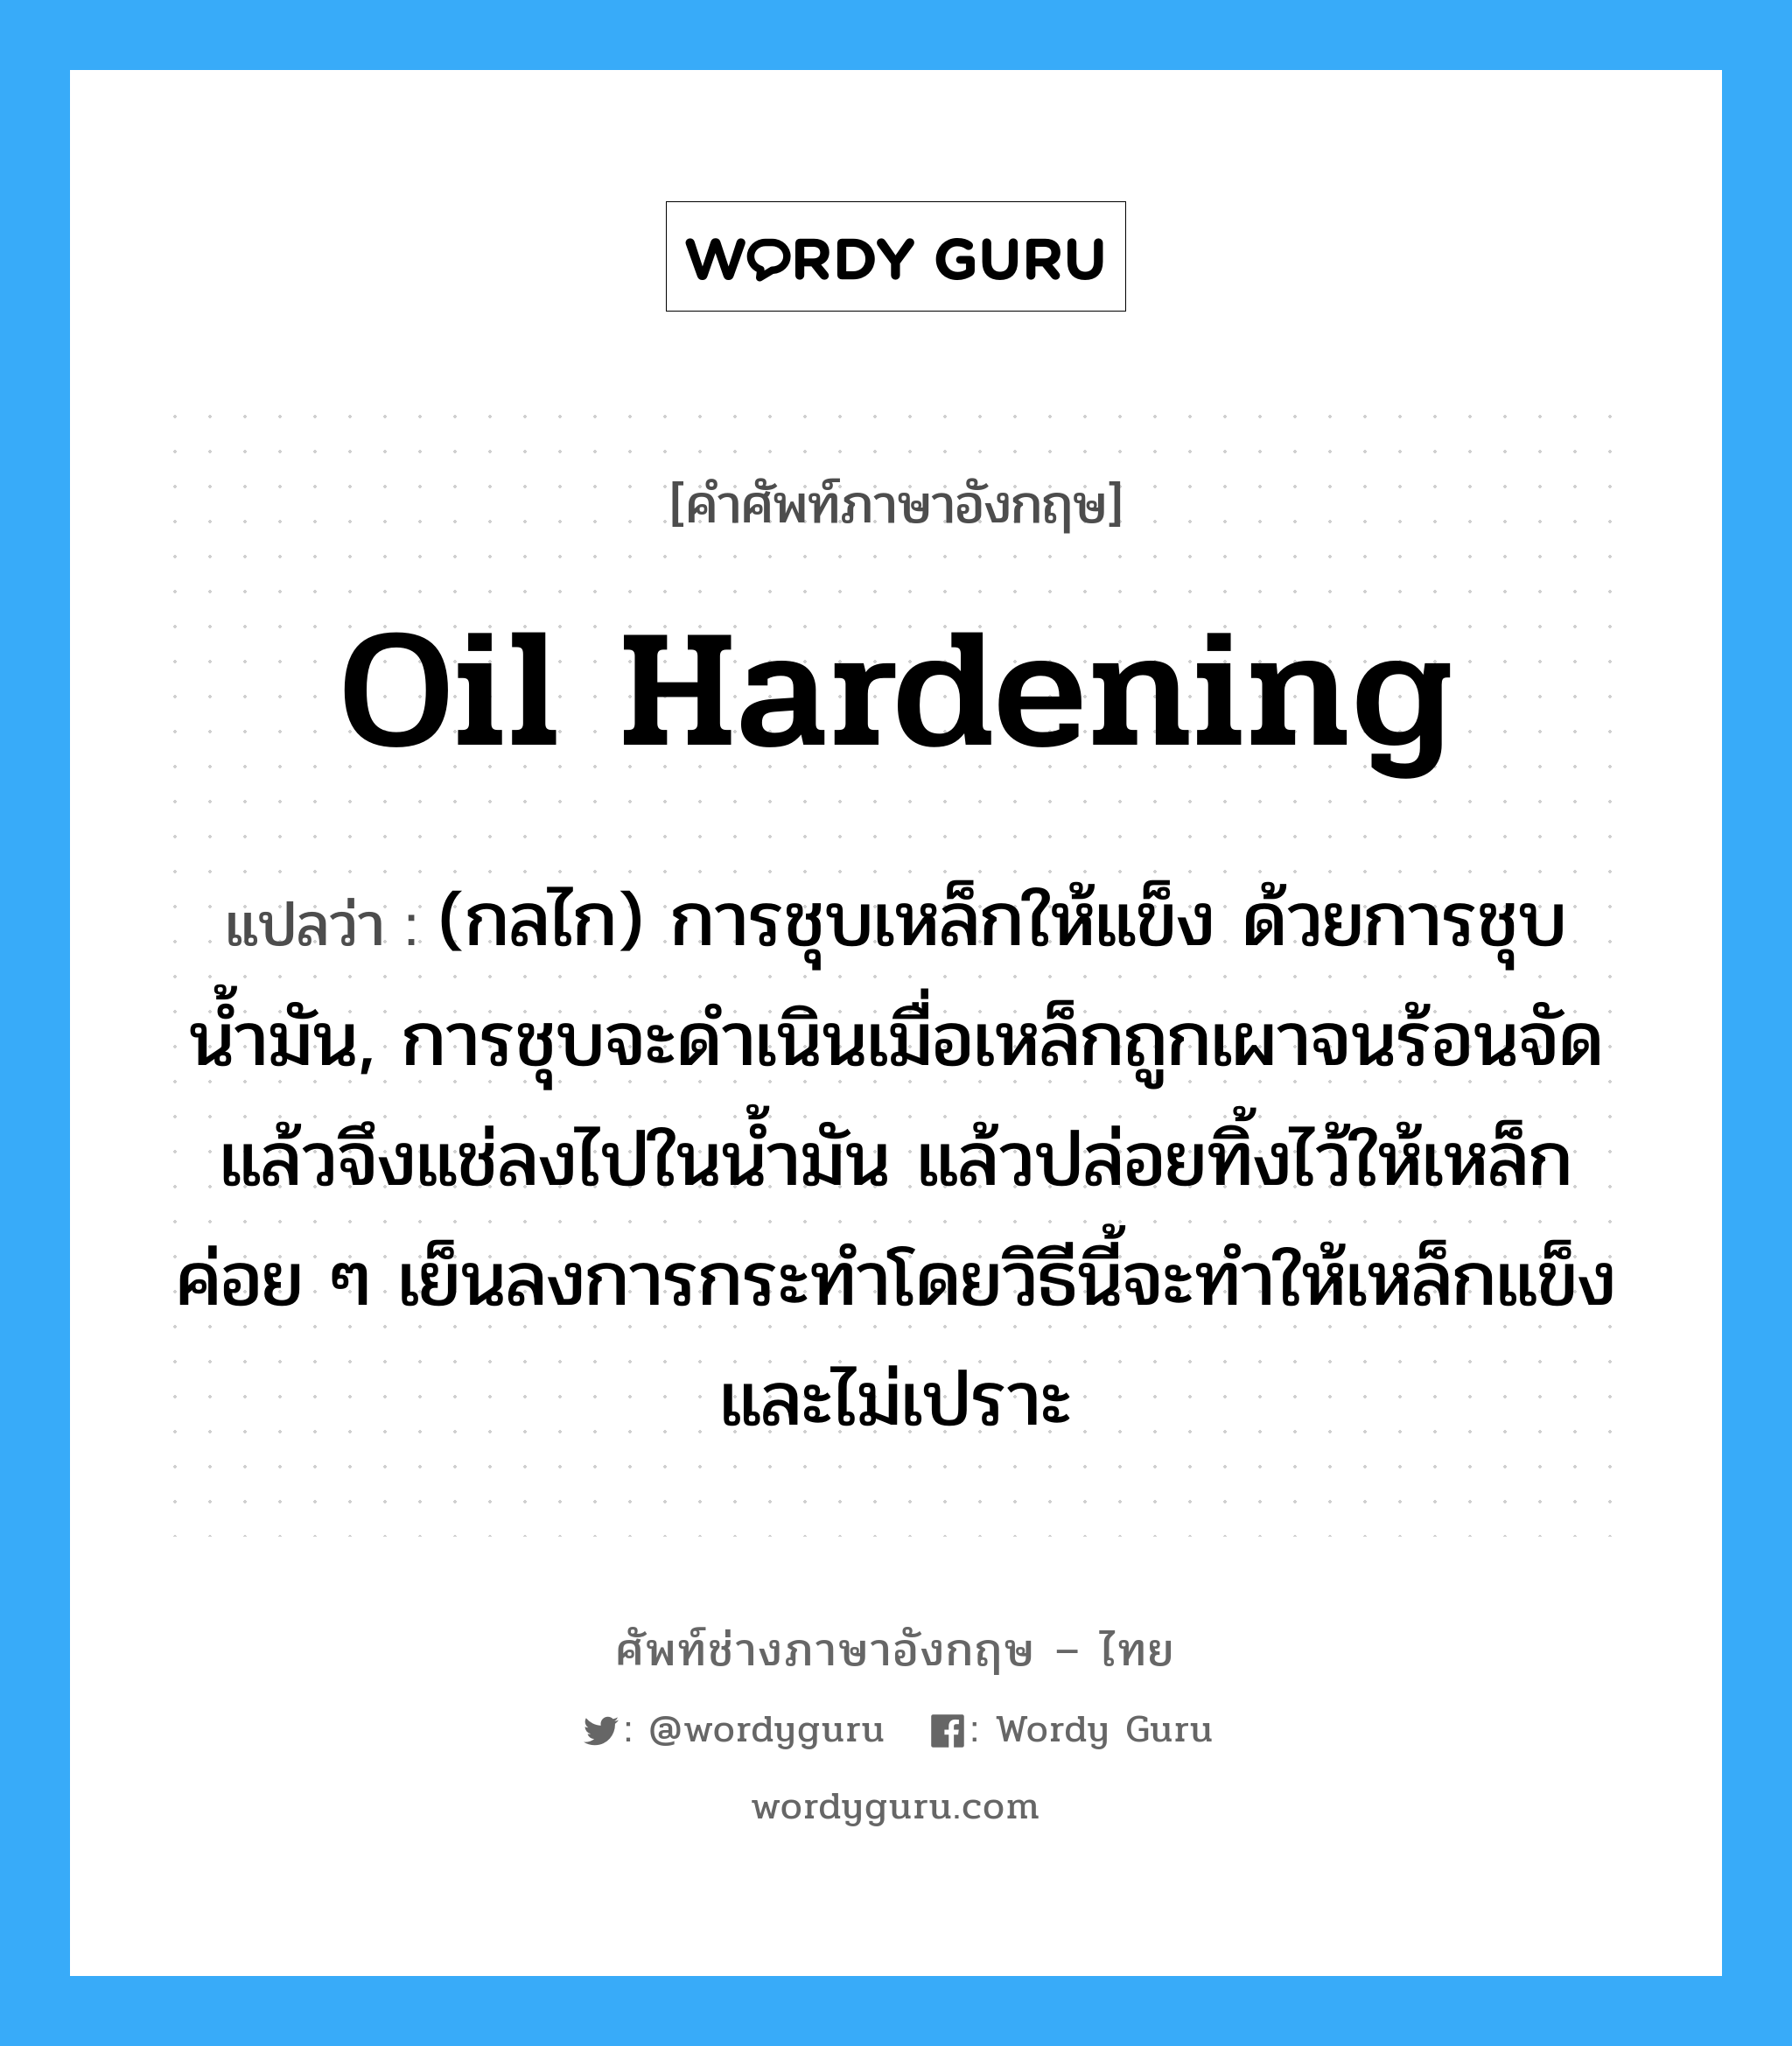 oil hardening แปลว่า?, คำศัพท์ช่างภาษาอังกฤษ - ไทย oil hardening คำศัพท์ภาษาอังกฤษ oil hardening แปลว่า (กลไก) การชุบเหล็กให้แข็ง ด้วยการชุบน้ำมัน, การชุบจะดำเนินเมื่อเหล็กถูกเผาจนร้อนจัดแล้วจึงแช่ลงไปในน้ำมัน แล้วปล่อยทิ้งไว้ให้เหล็กค่อย ๆ เย็นลงการกระทำโดยวิธีนี้จะทำให้เหล็กแข็งและไม่เปราะ